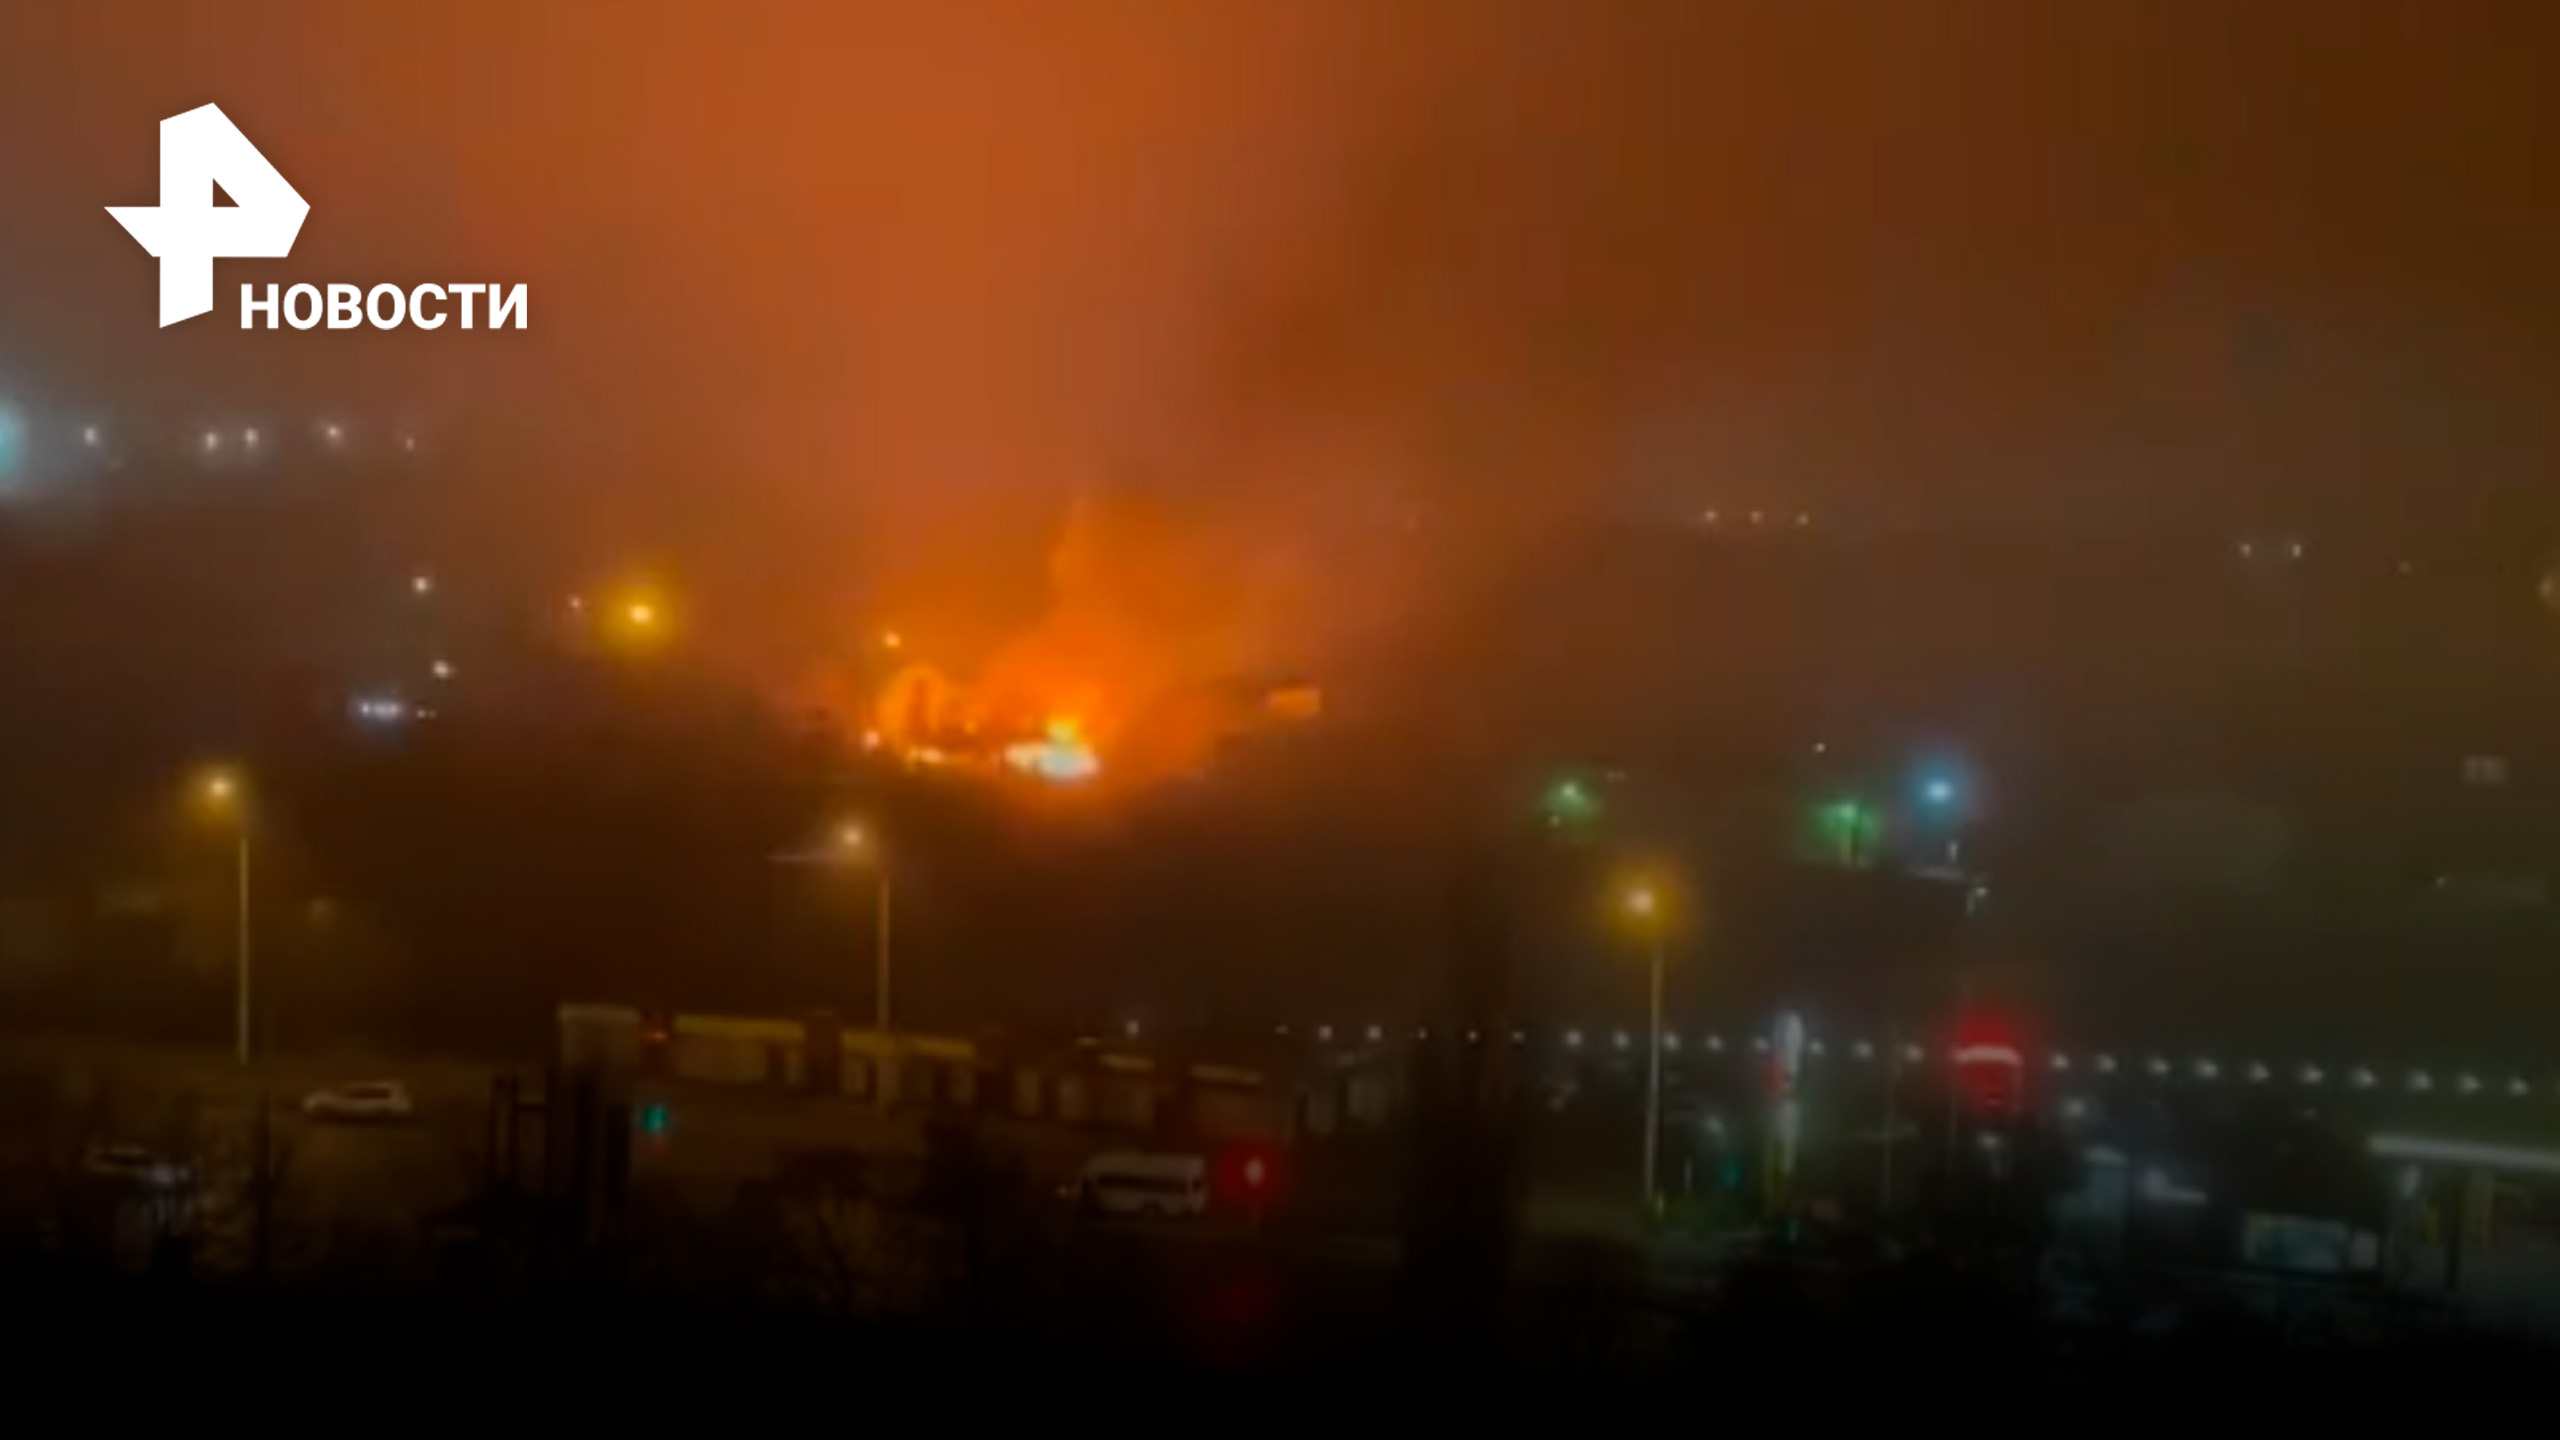 В Липецке загорелся жилой дом, причины пожара выясняются / РЕН Новости